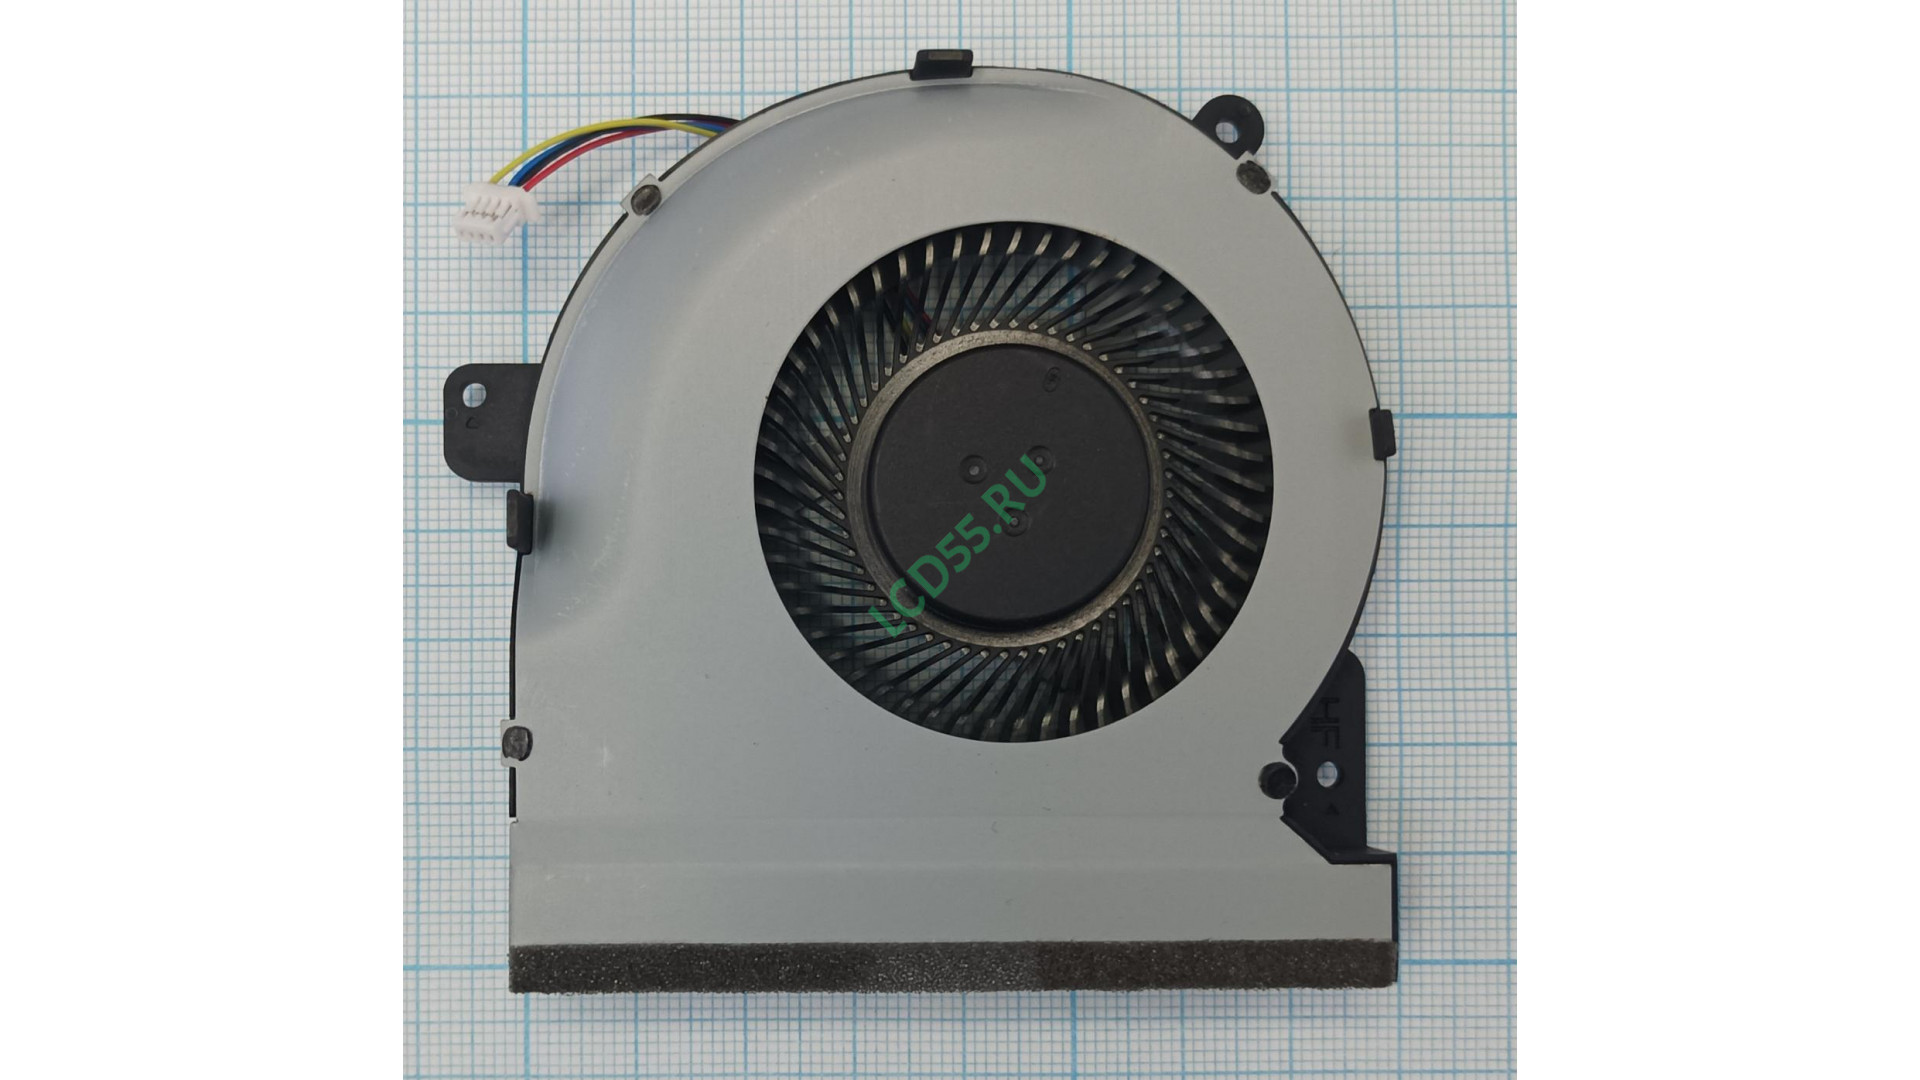 Вентилятор Asus GL502, GX502 GPU